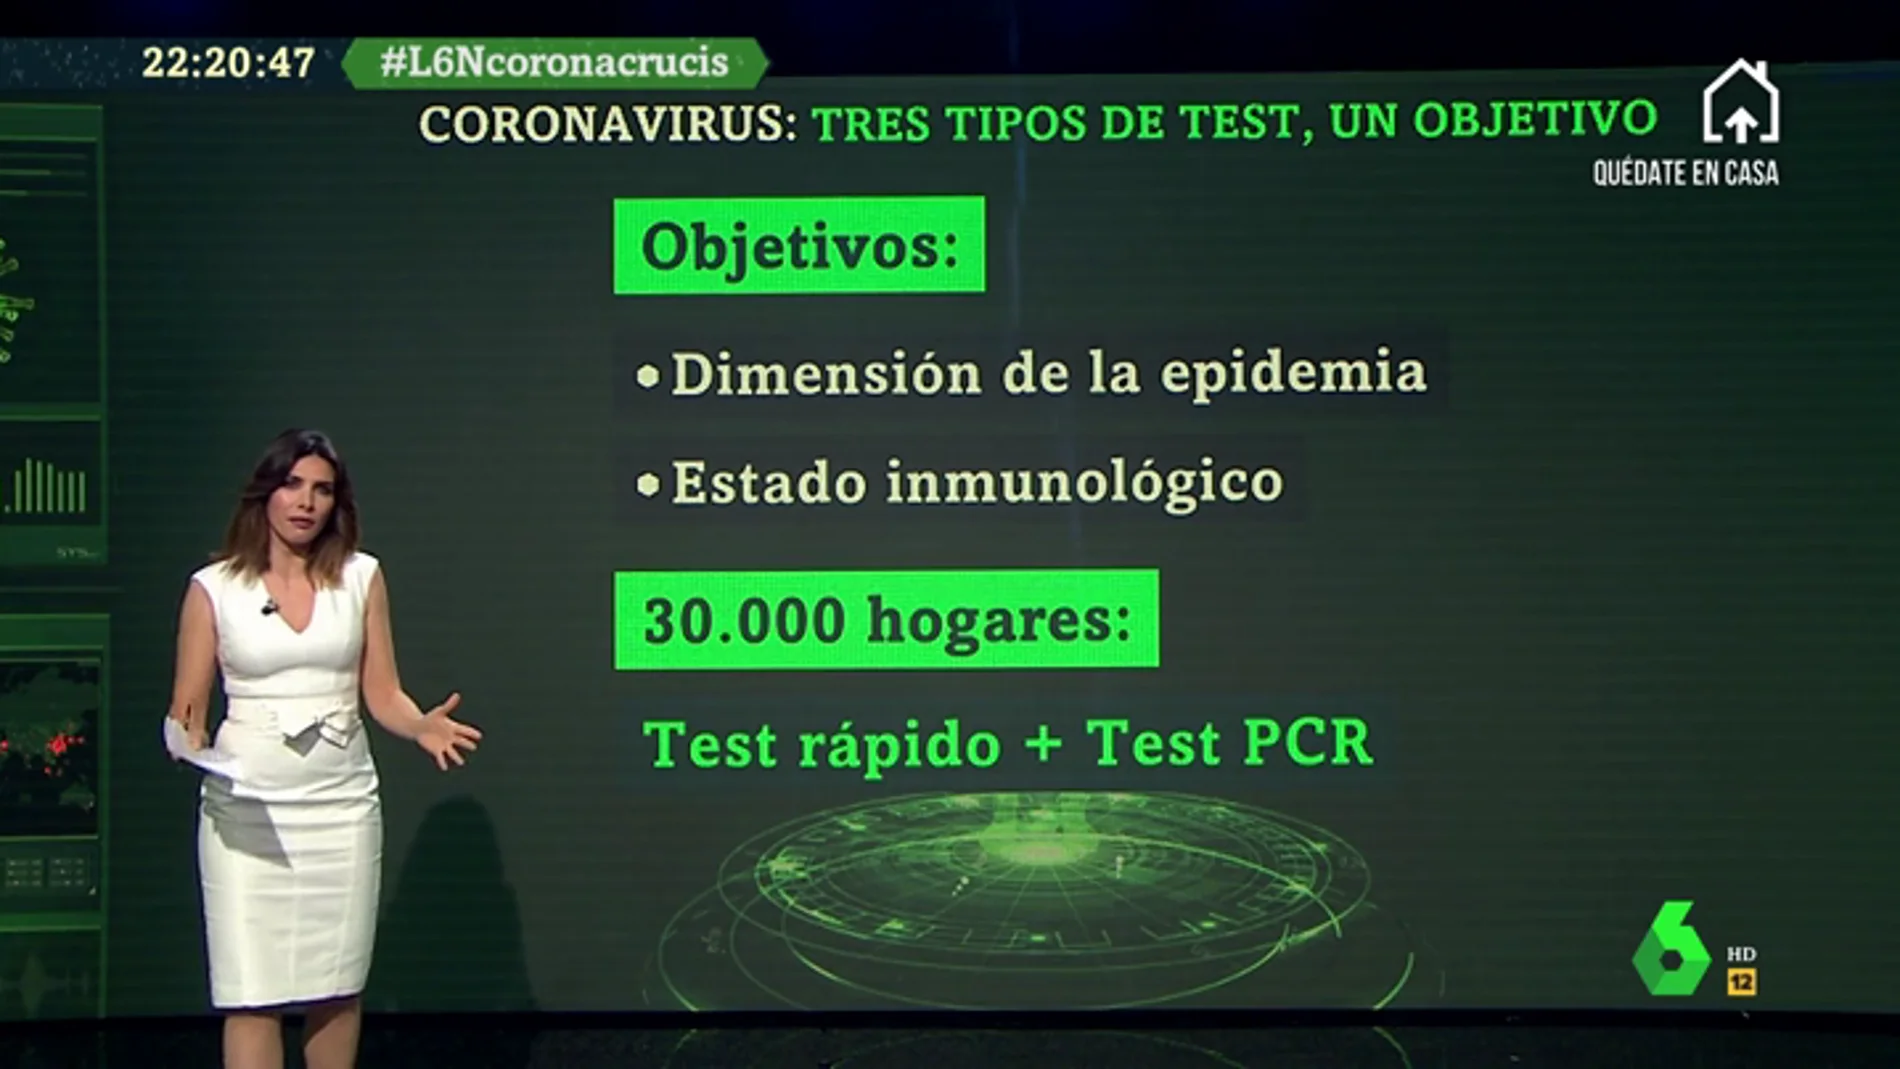 Te explicamos las diferencias entre los tres test que se están usando para detectar el coronavirus en personas contagiadas